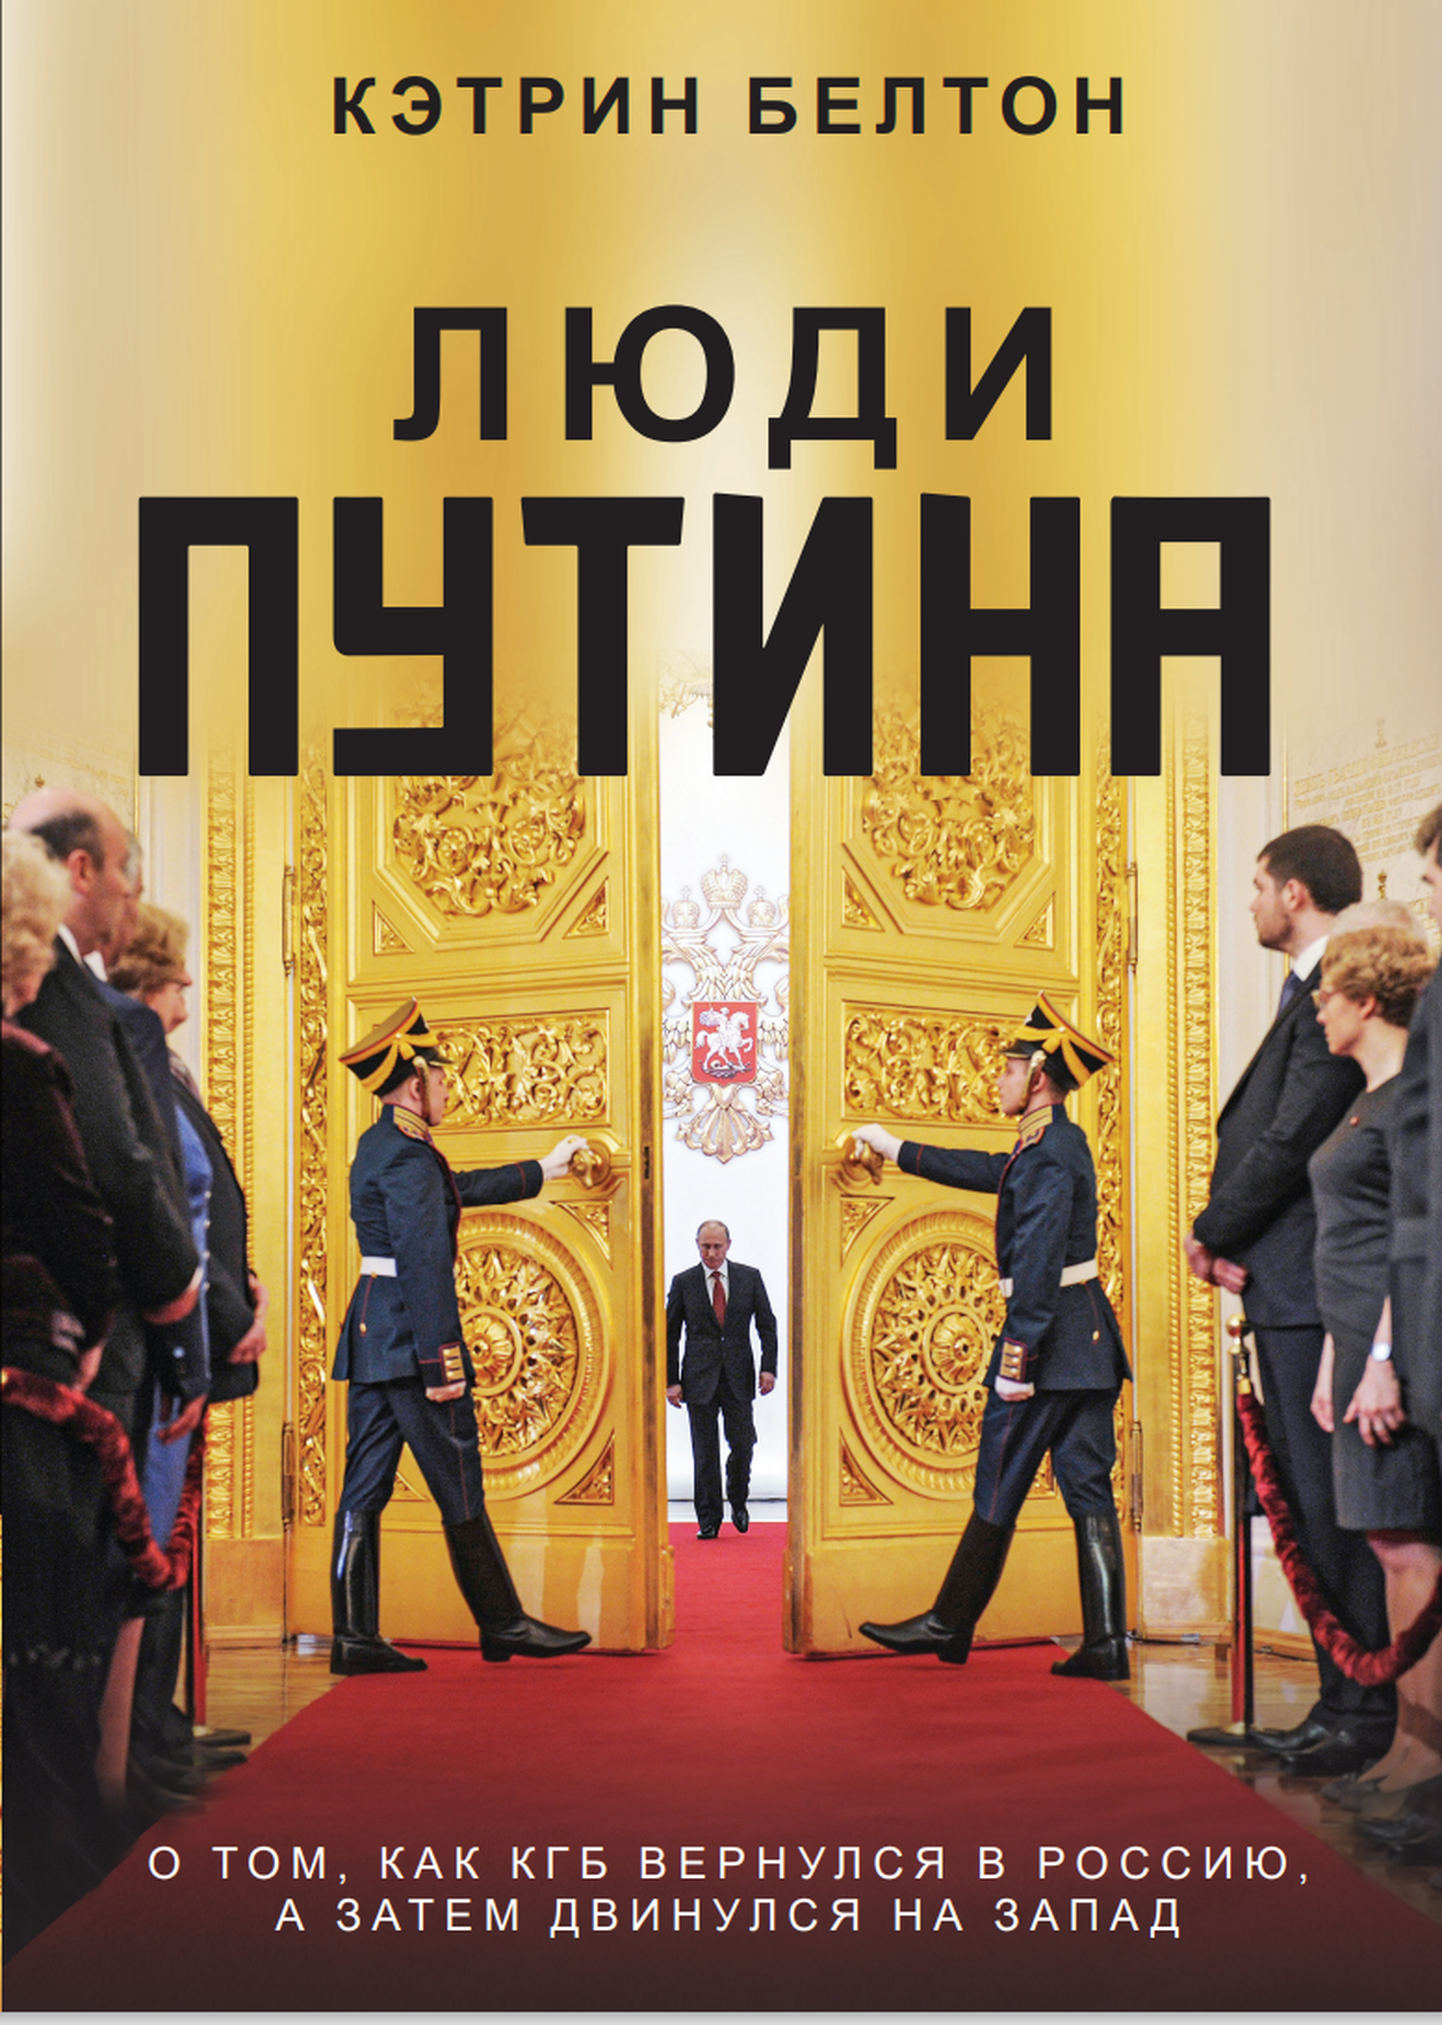 Catherine Beltoni raamat «Putini inimesed. Kuidas KGB võttis tagasi Venemaa ja tungis siis edasi Läände»